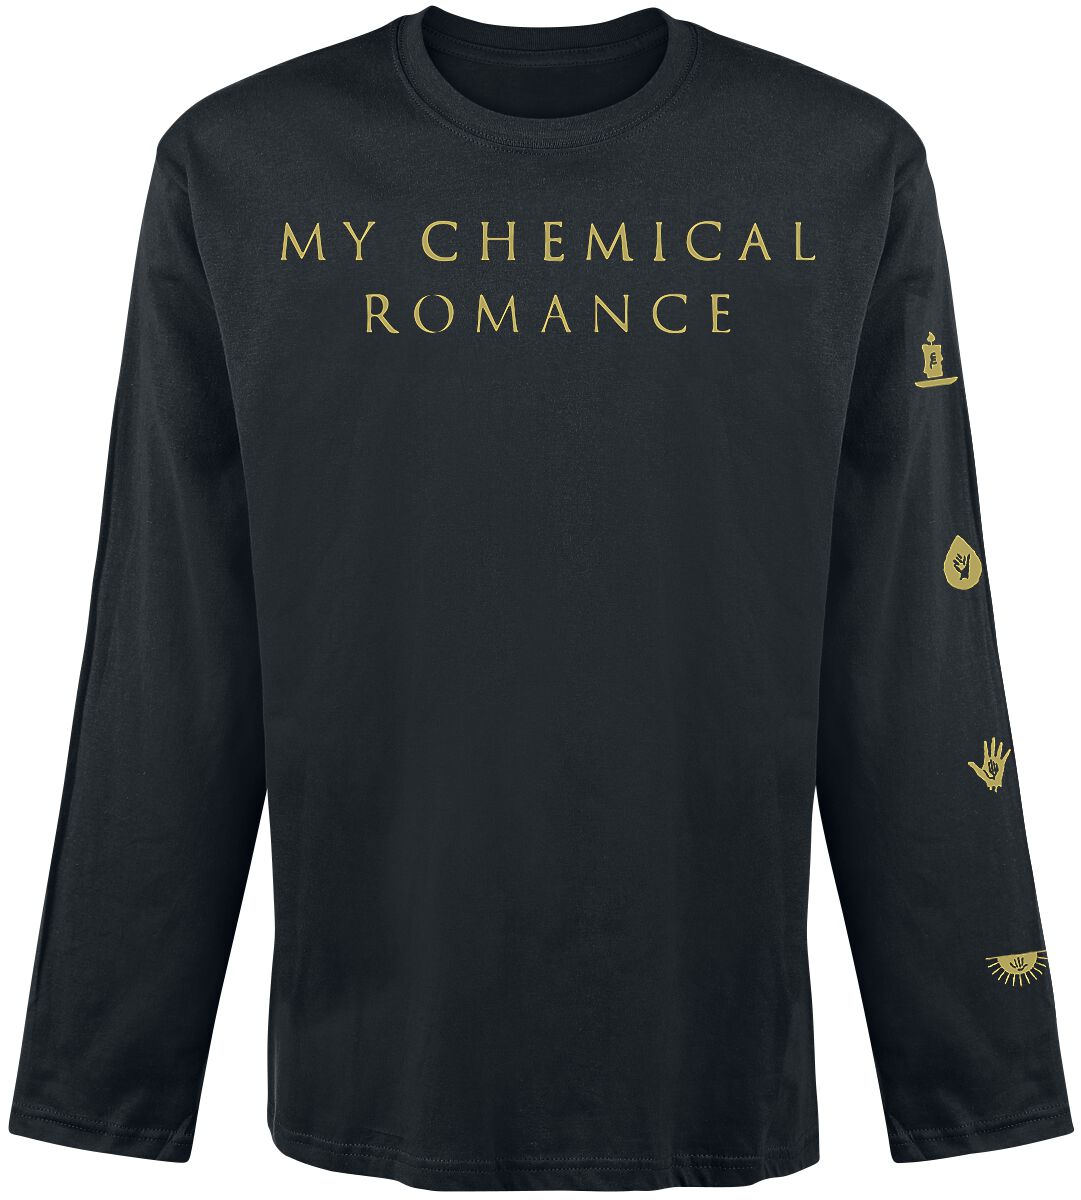 My Chemical Romance Langarmshirt - Icon - S bis XXL - für Männer - Größe XL - schwarz  - Lizenziertes Merchandise!